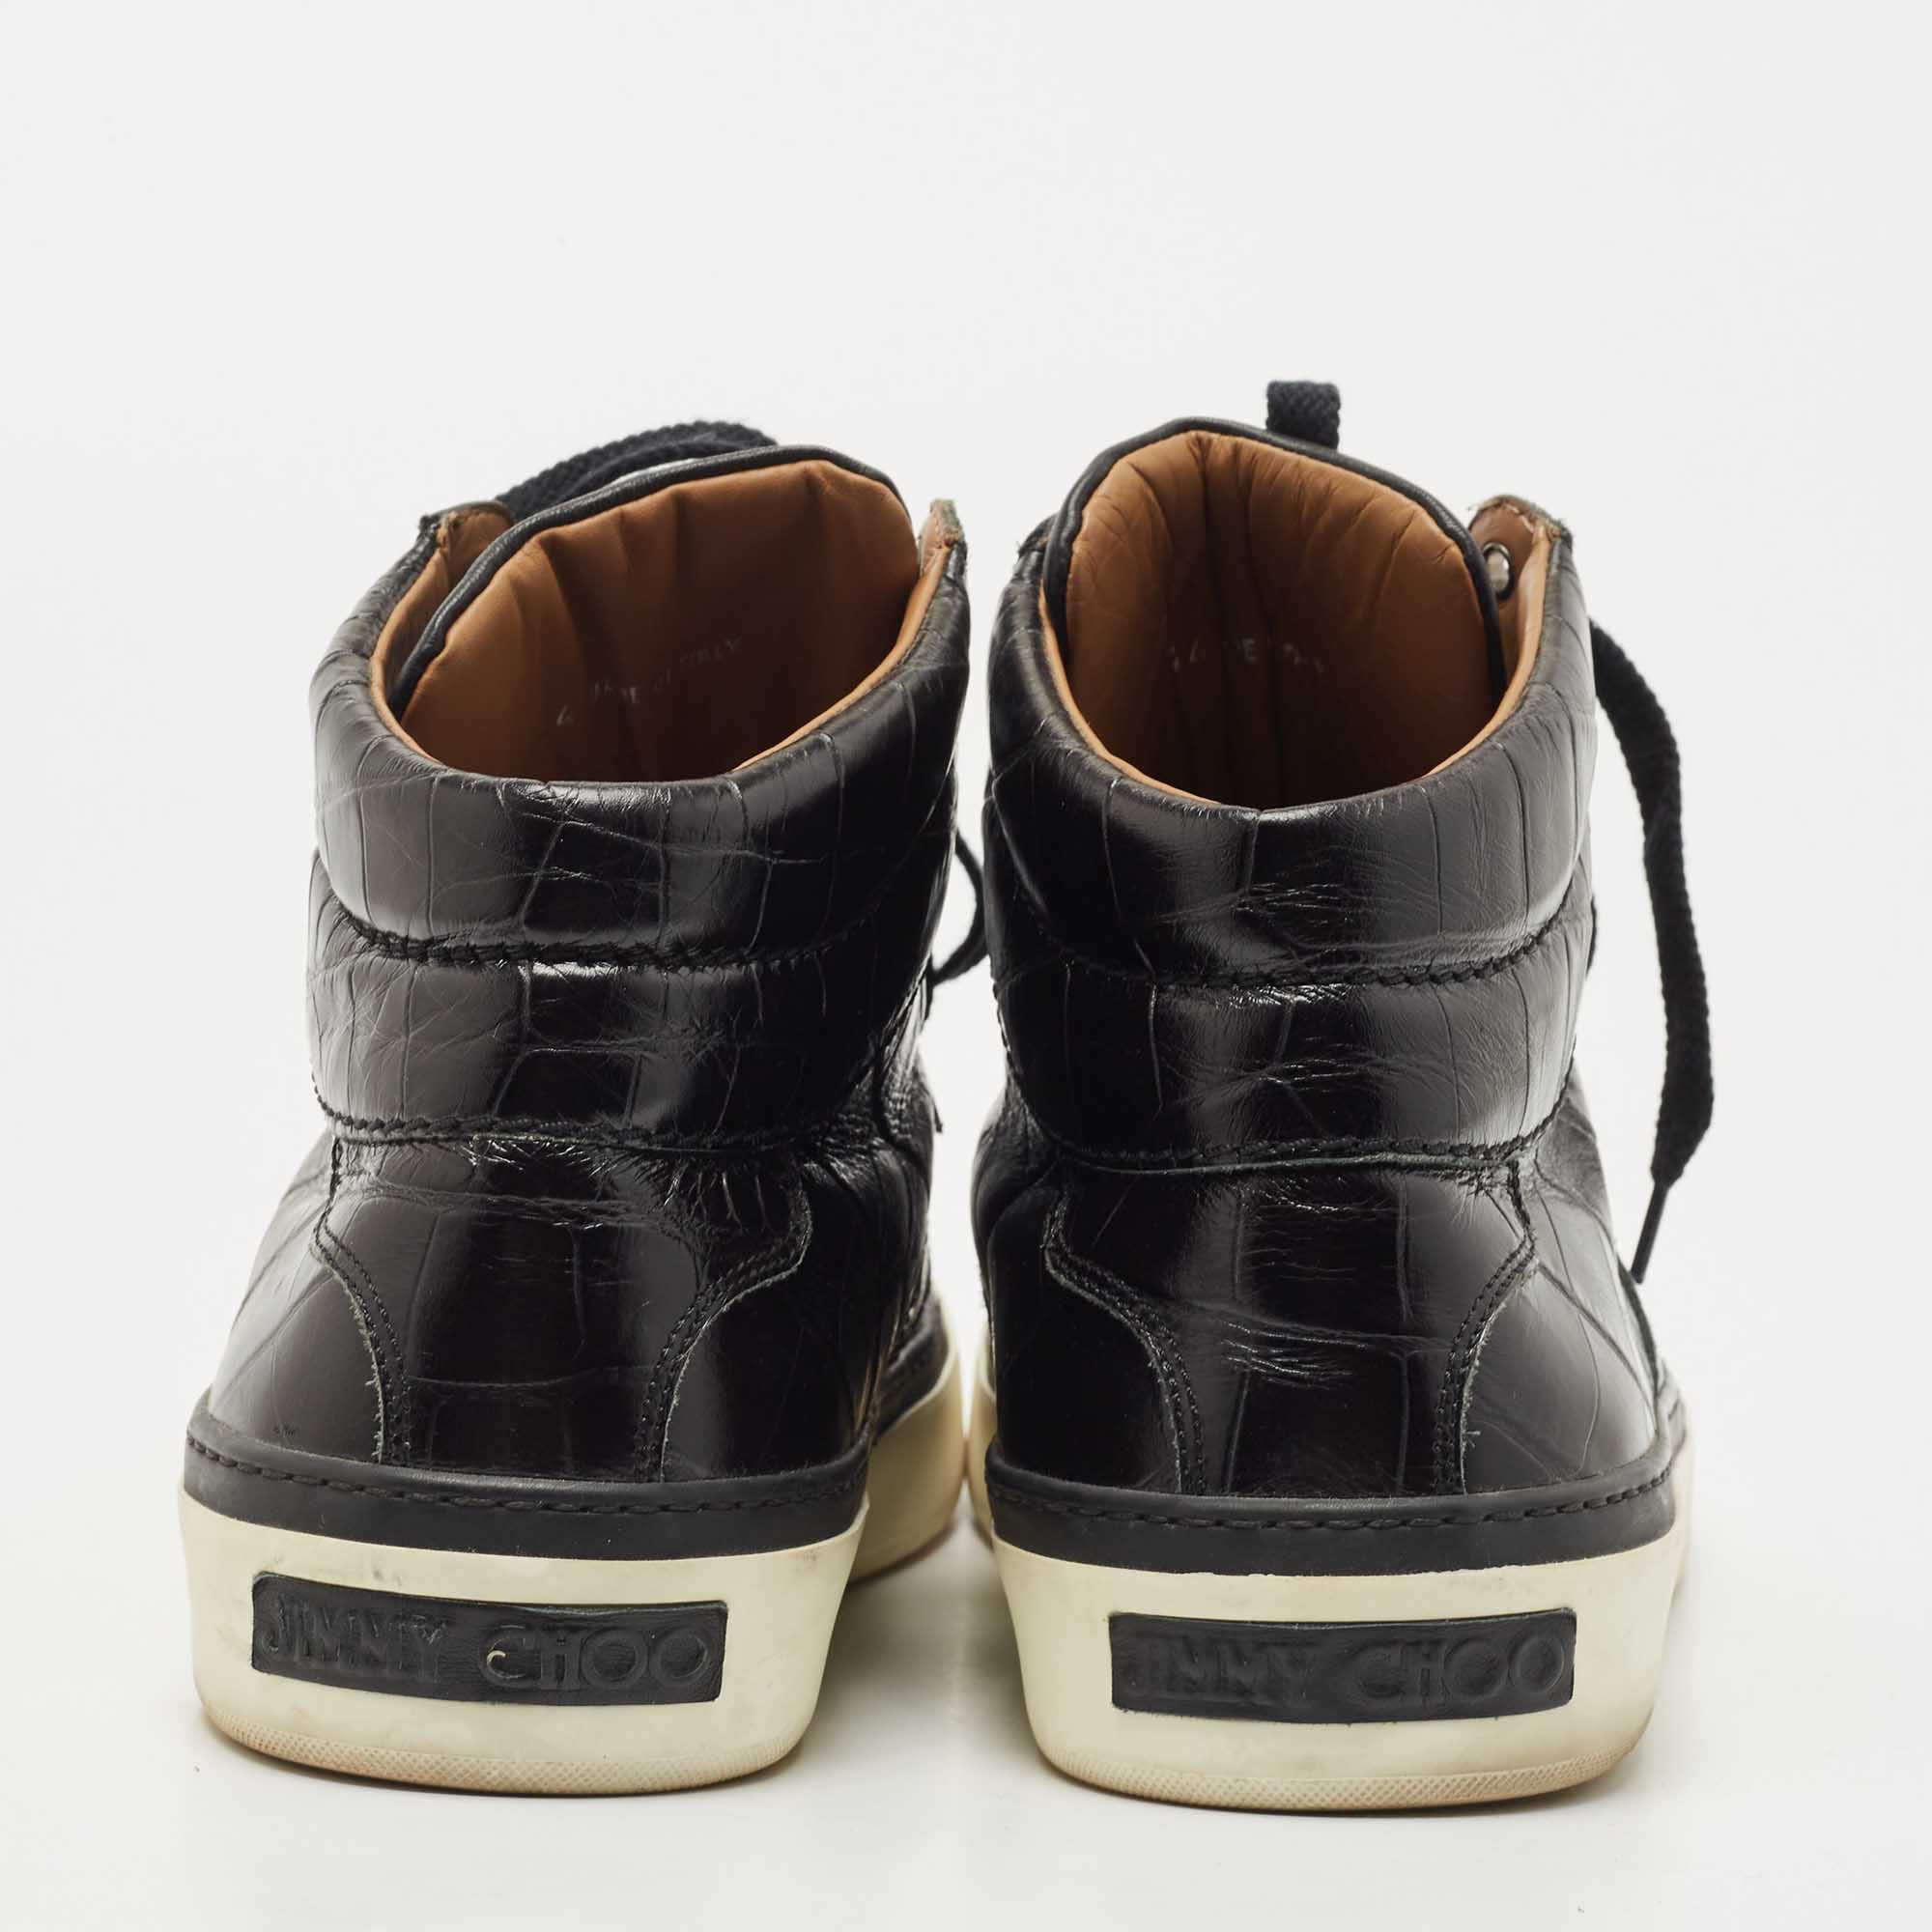 Jimmy Choo Black Croc Embossed Leather Belgravia Sneakers Size 44